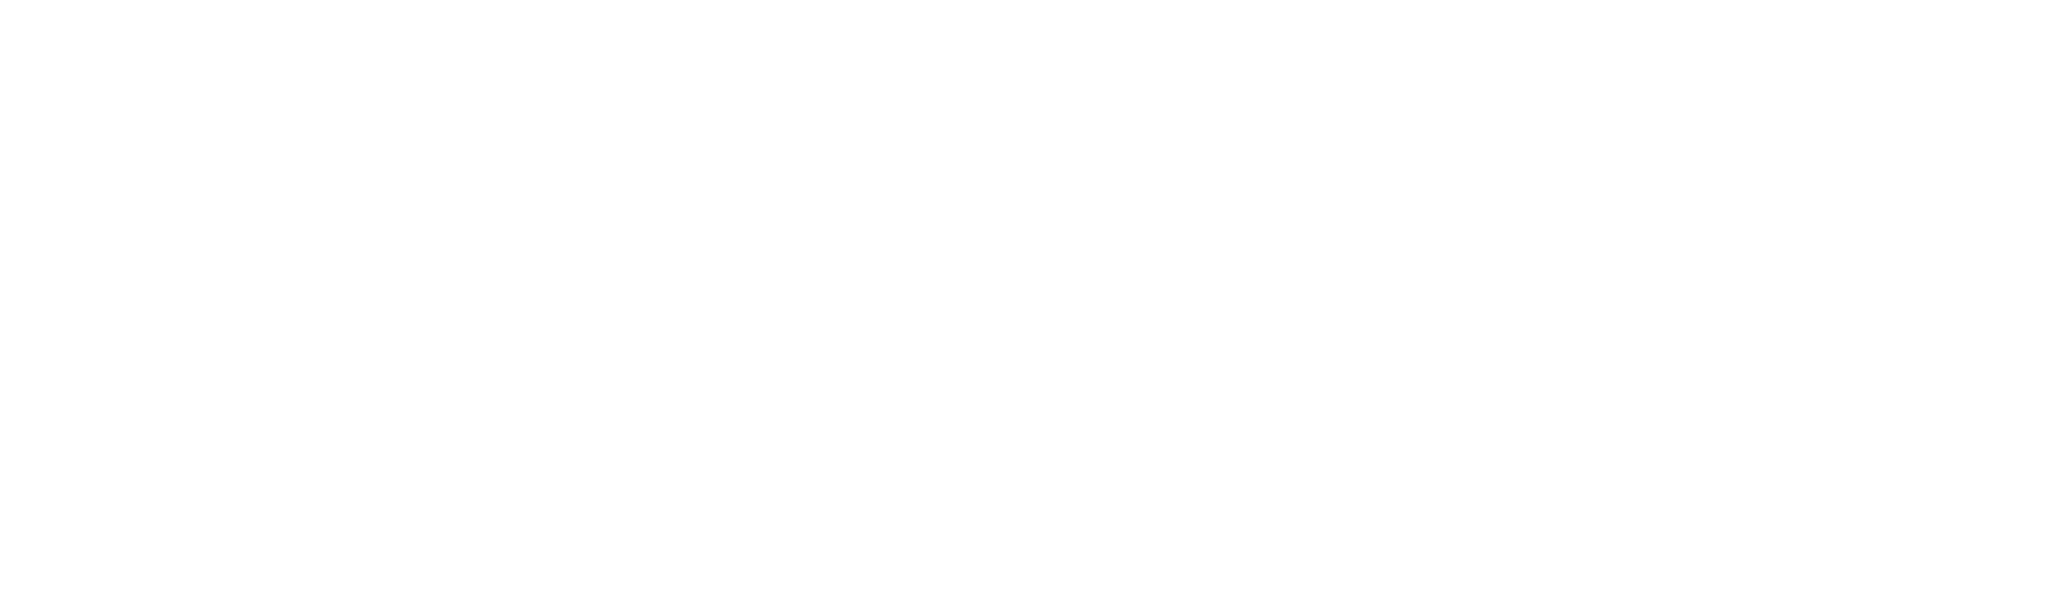 Baddestmixer Online Store